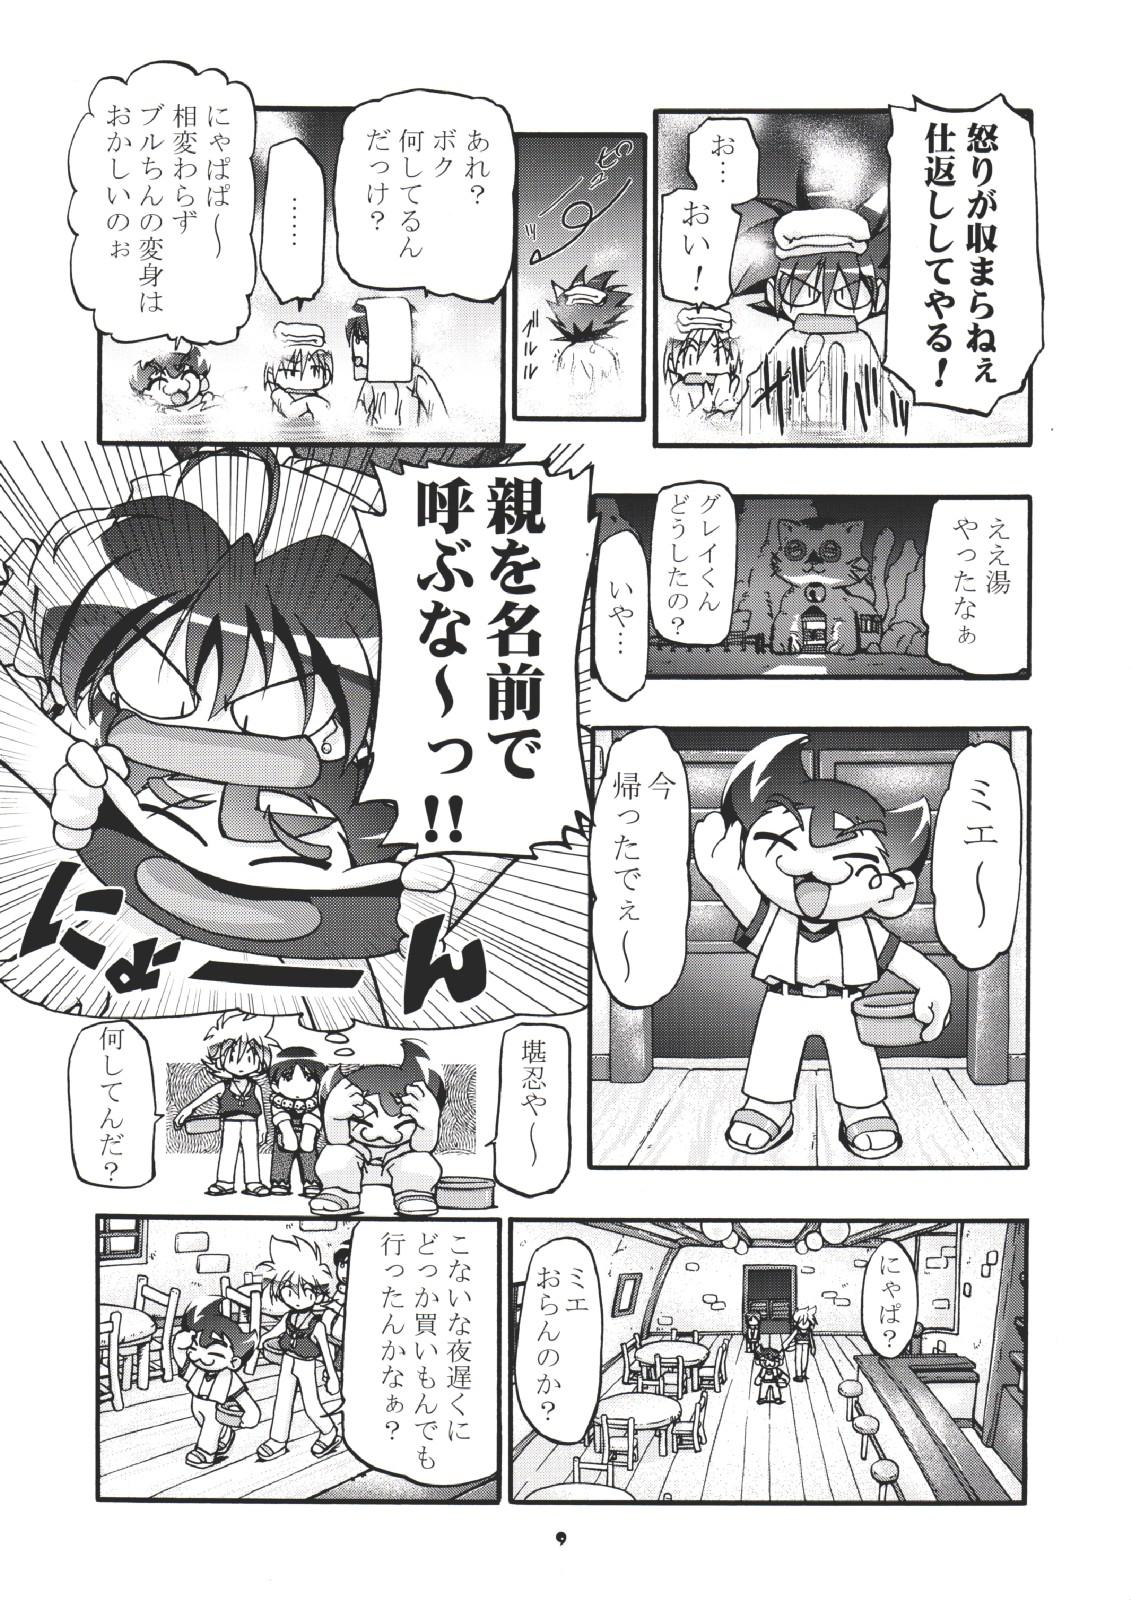 Blows (CR35) [Gambler Club (Kousaka Jun)] P-Densetsu Batoru P-Daman (Battle B-Daman) - B-daman Livesex - Page 8